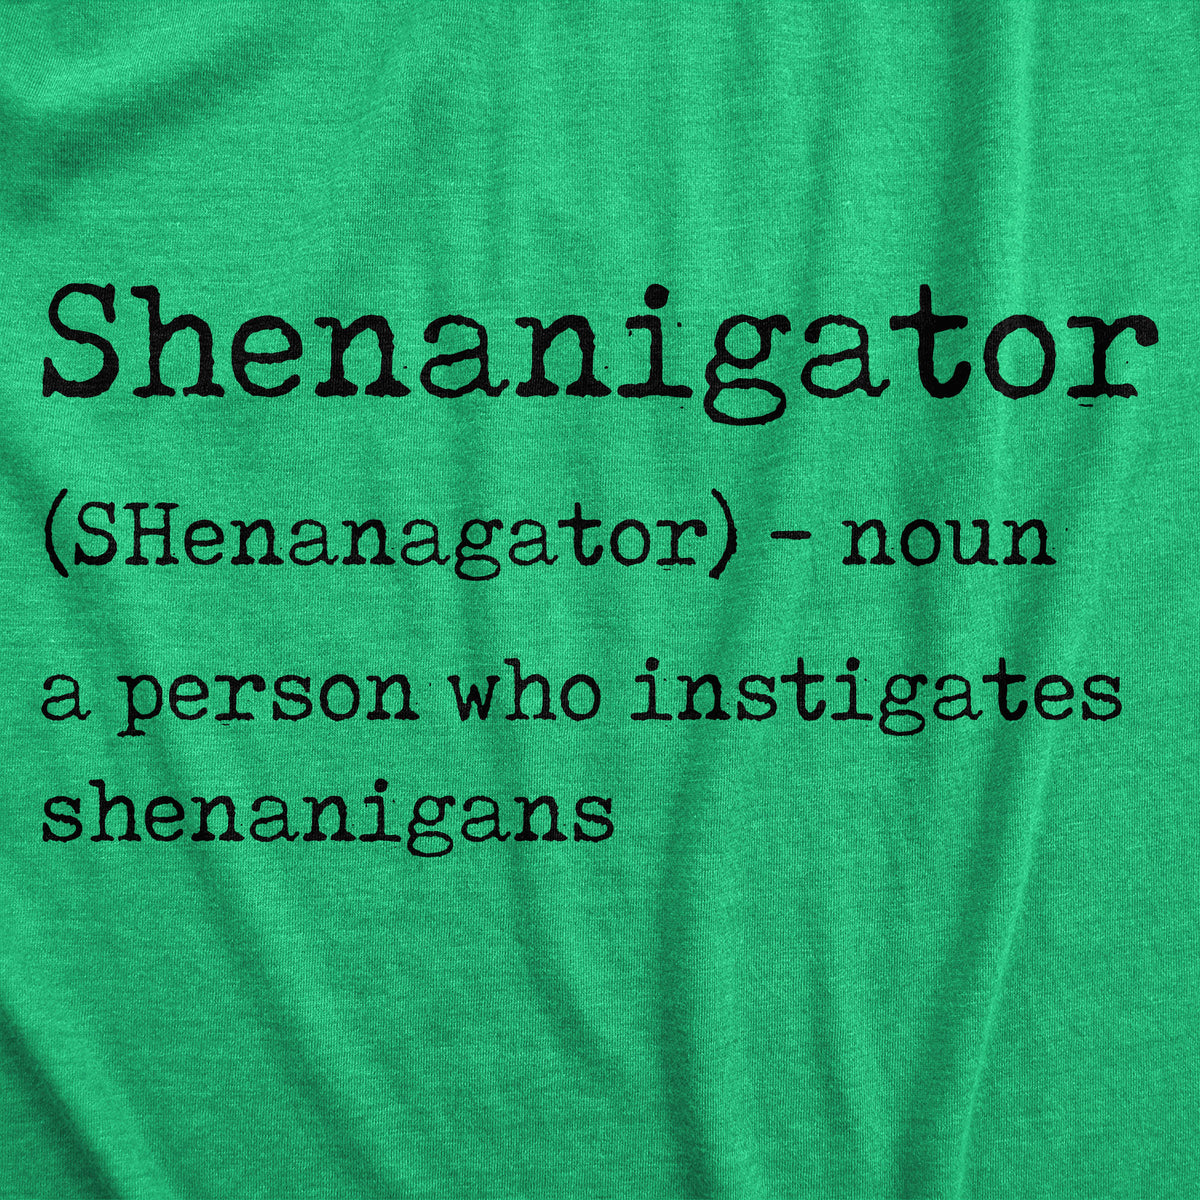 Shenanigator Women&#39;s T Shirt